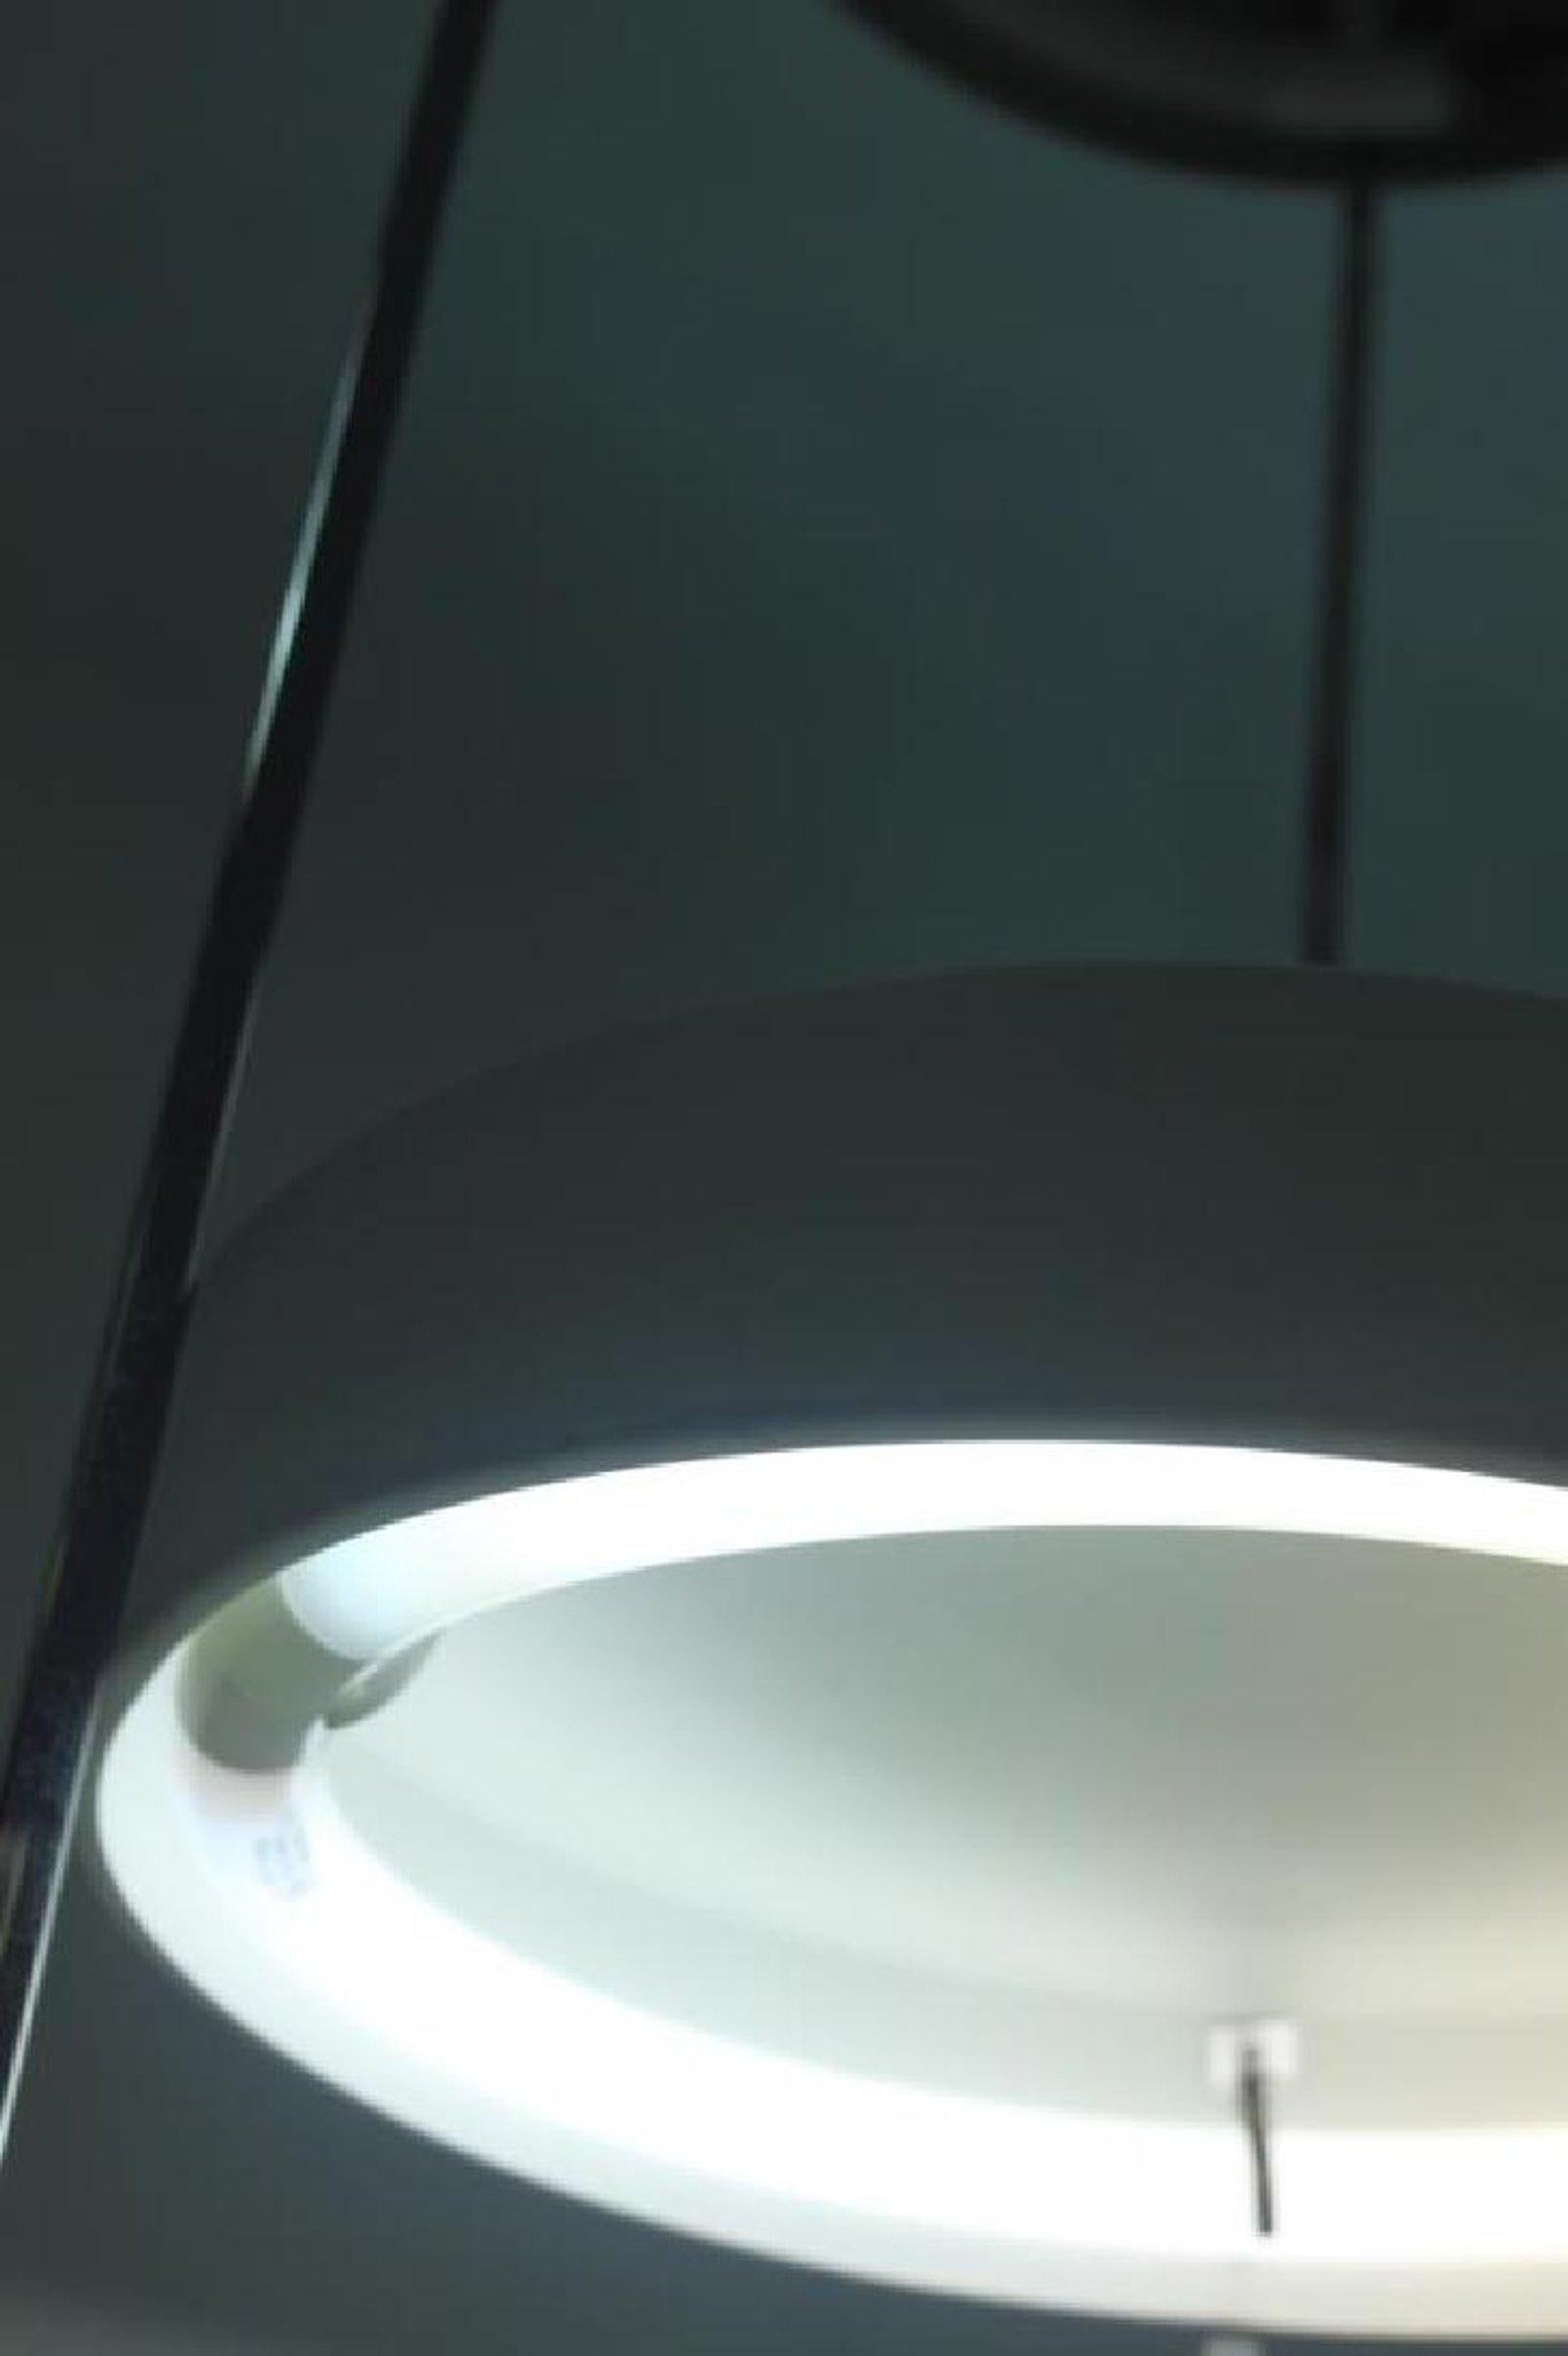 Kovaks Enameled Steel Floor Lamp Shelving & Display Etagere Mid-Century Minimal For Sale 1